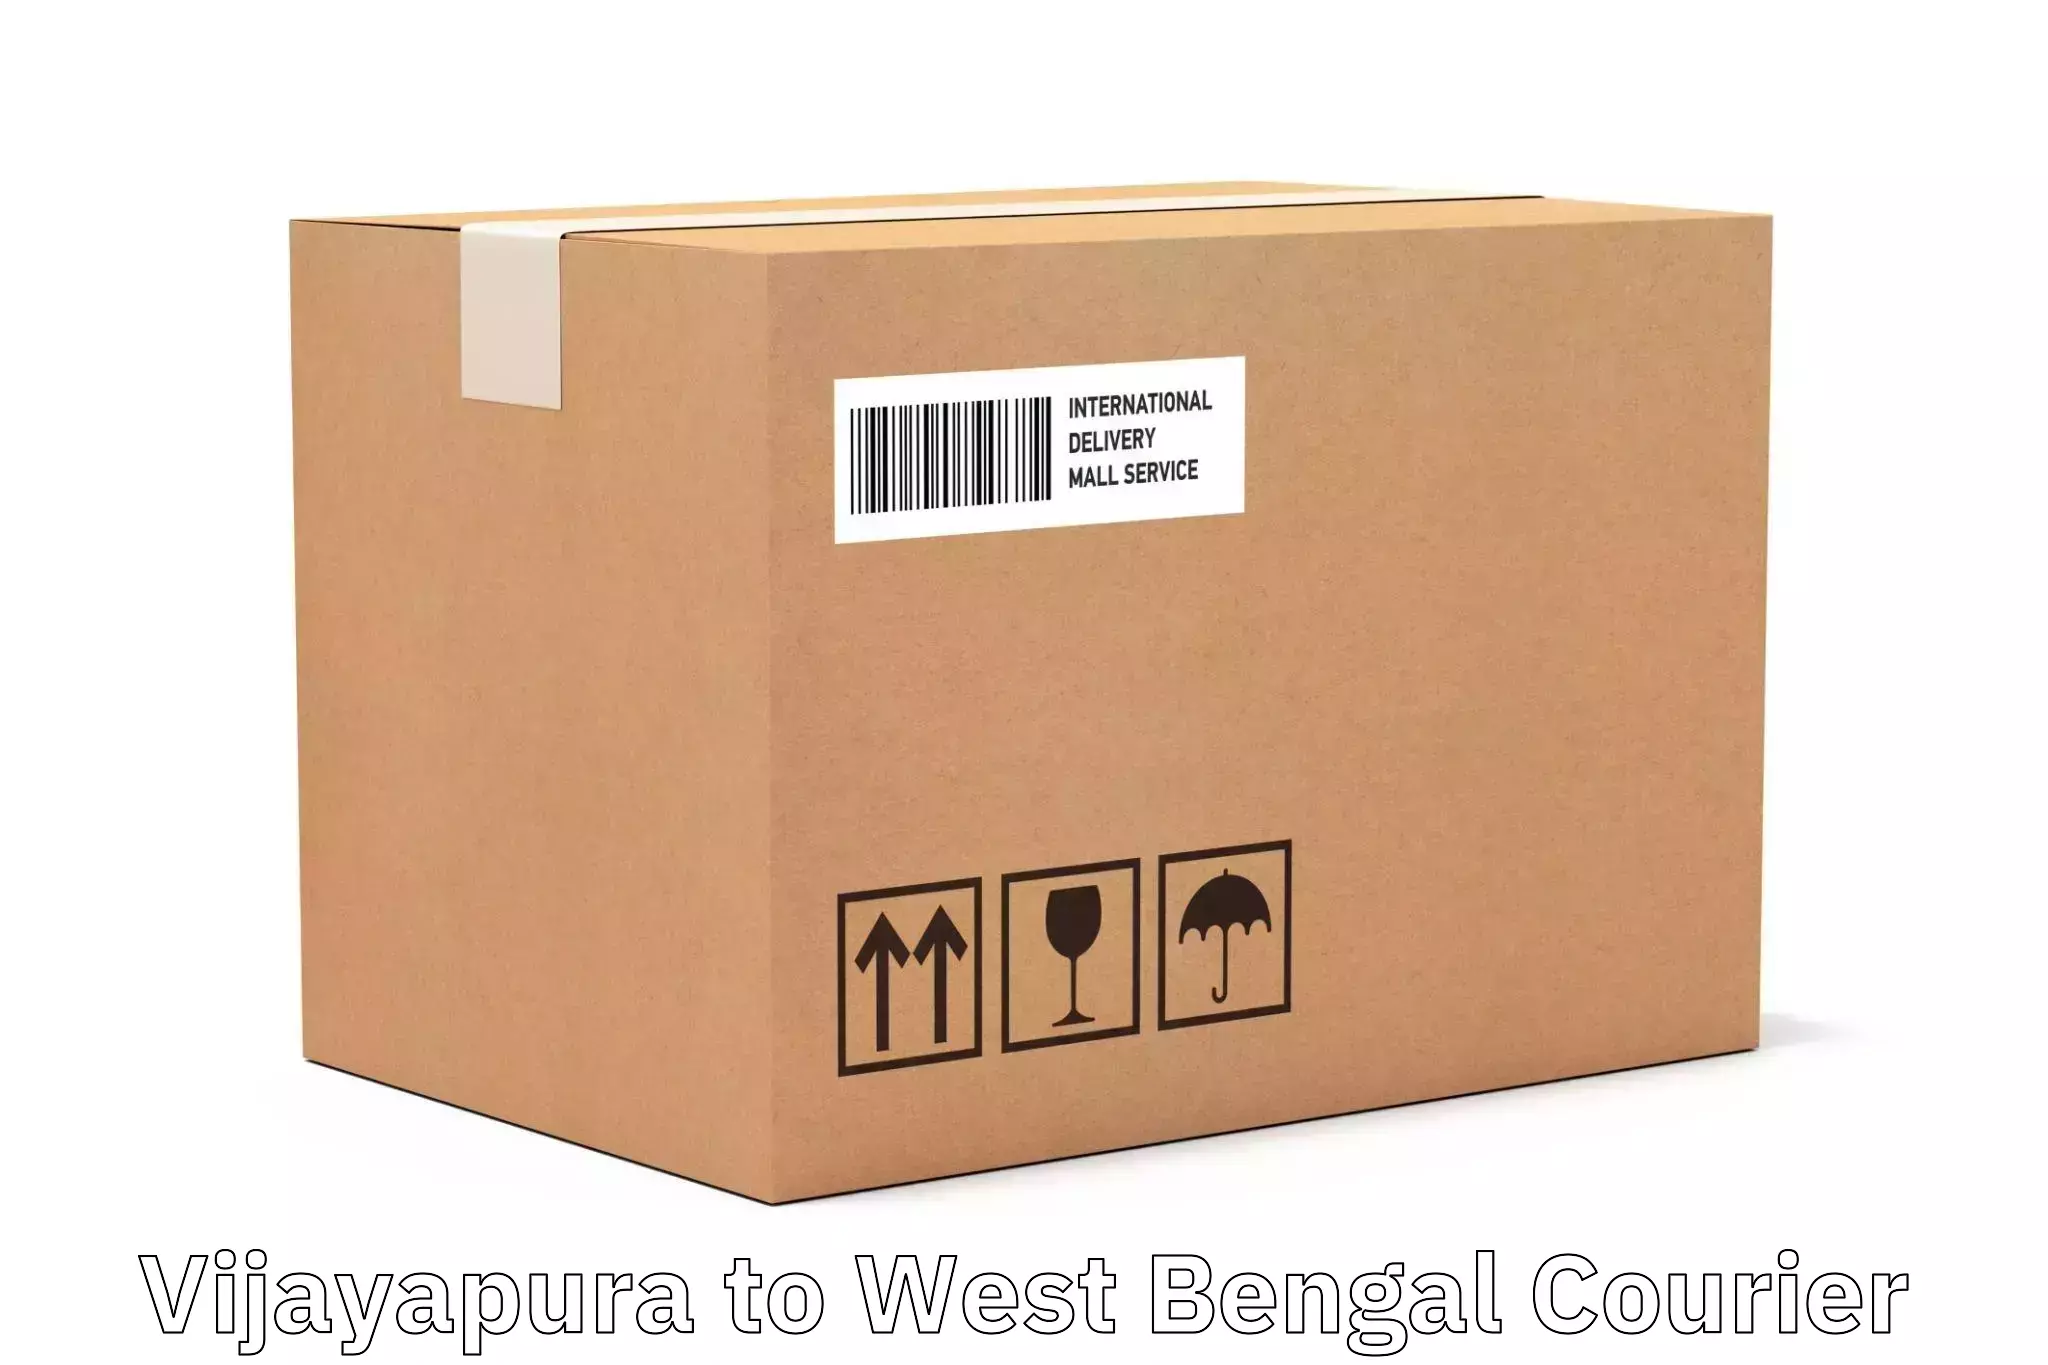 Global shipping solutions Vijayapura to Bhagabati